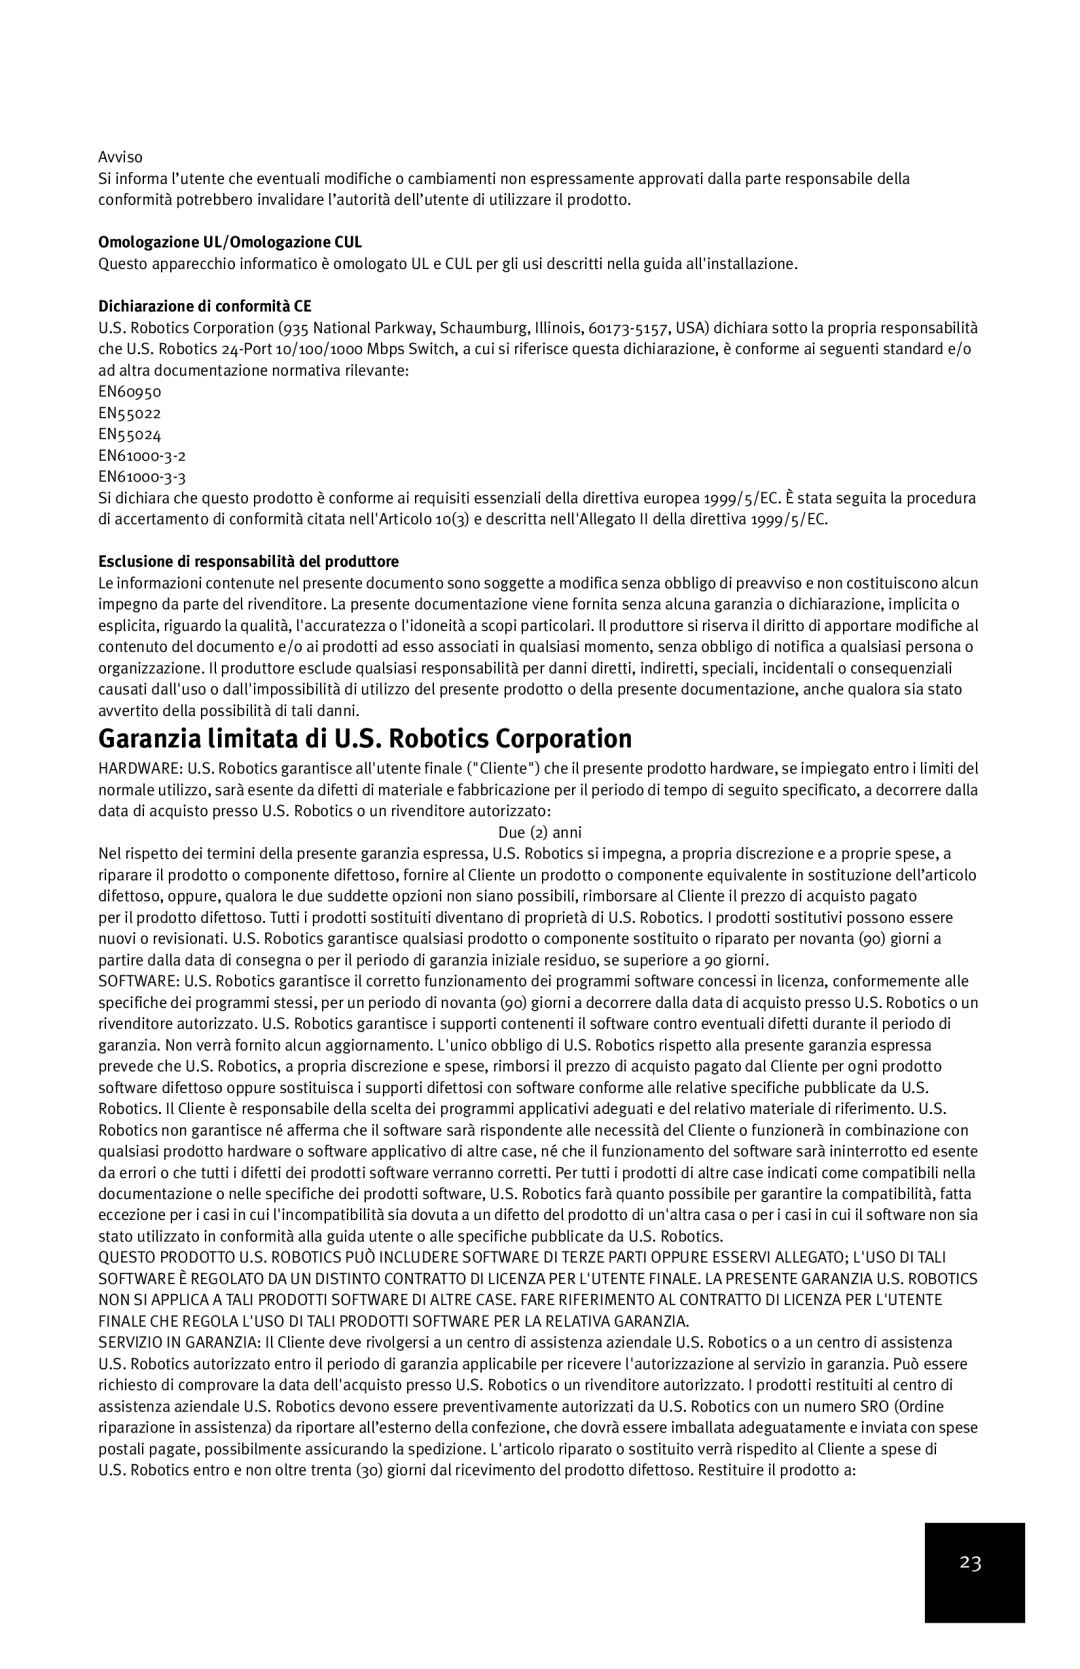 USRobotics 7931 manual Garanzia limitata di U.S. Robotics Corporation, Omologazione UL/Omologazione CUL 